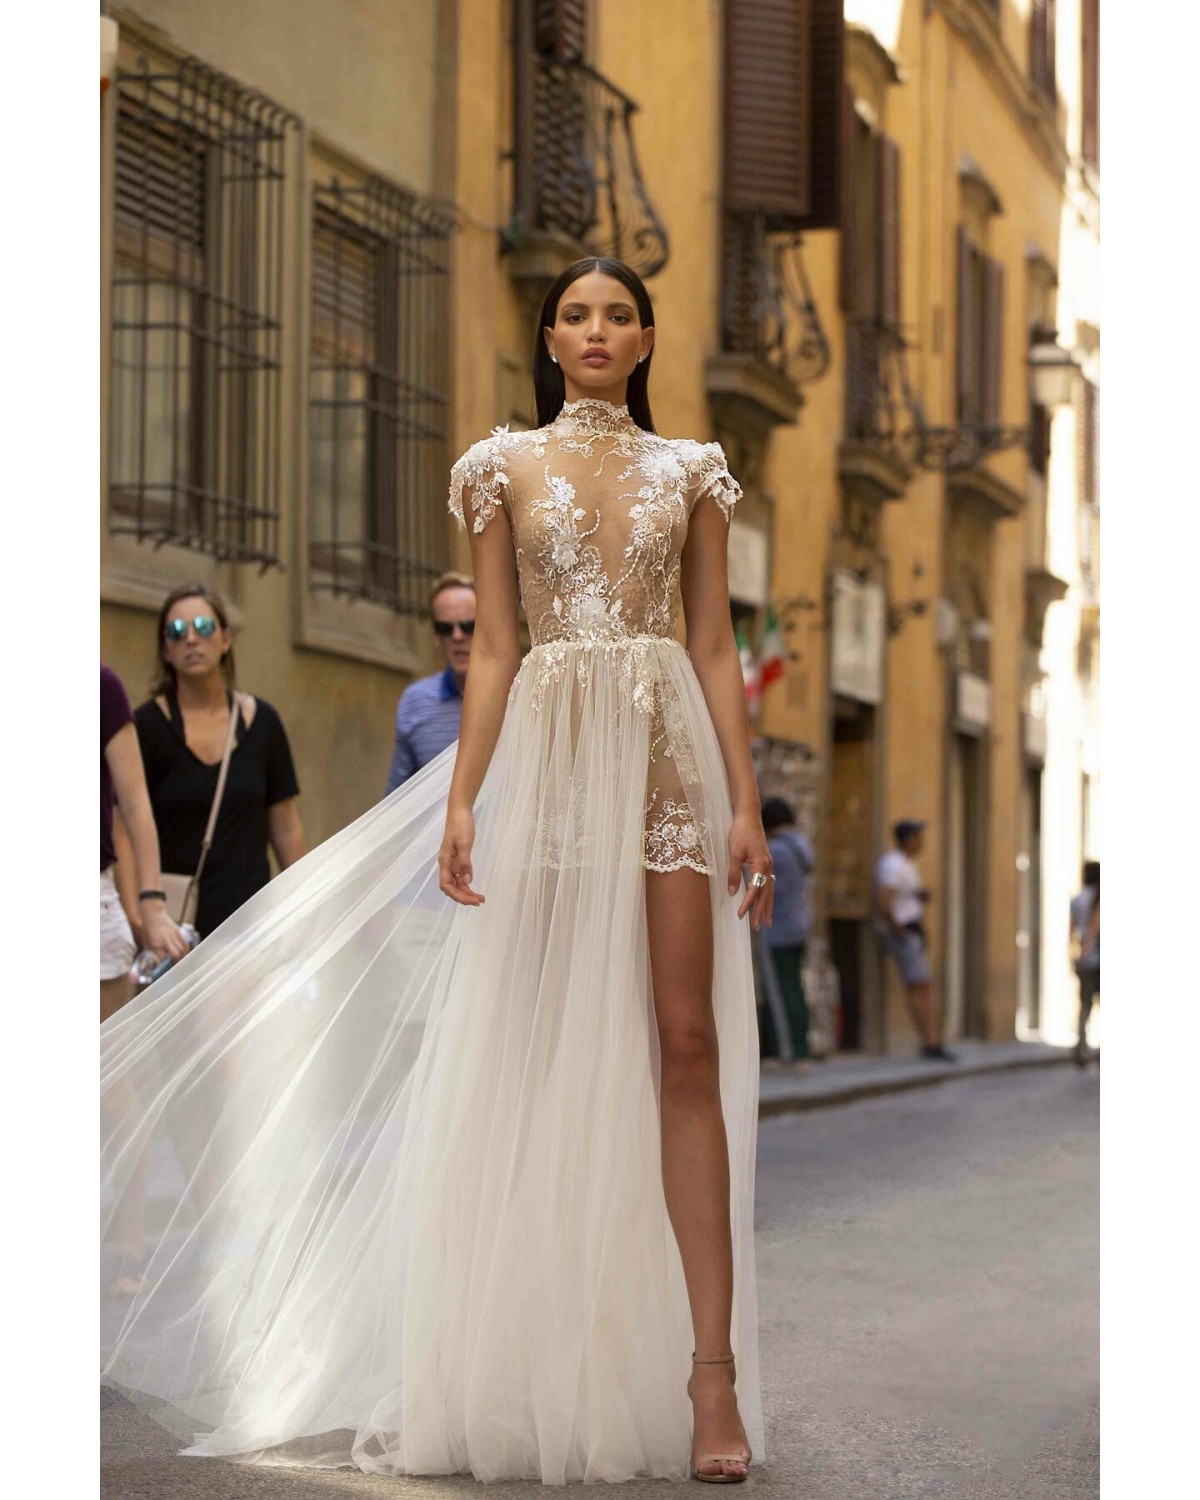 Fabrizia - abito da sposa collezione 2020 - Muse by Berta